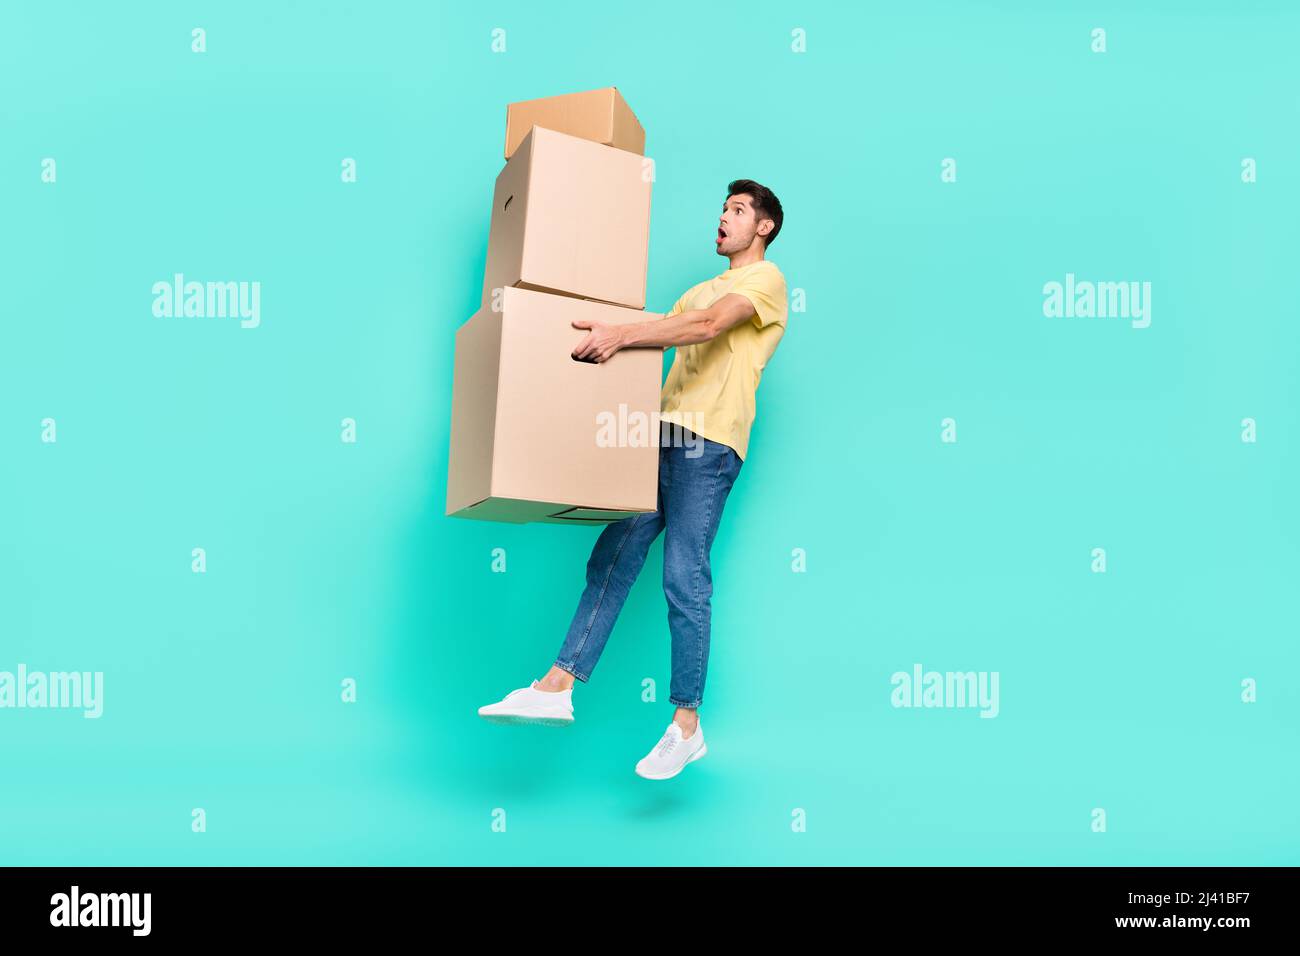 Foto del corpo intero di tipo brunet impressionato salto con scatola indossare t-shirt scarpe jeans isolato su sfondo turchese Foto Stock